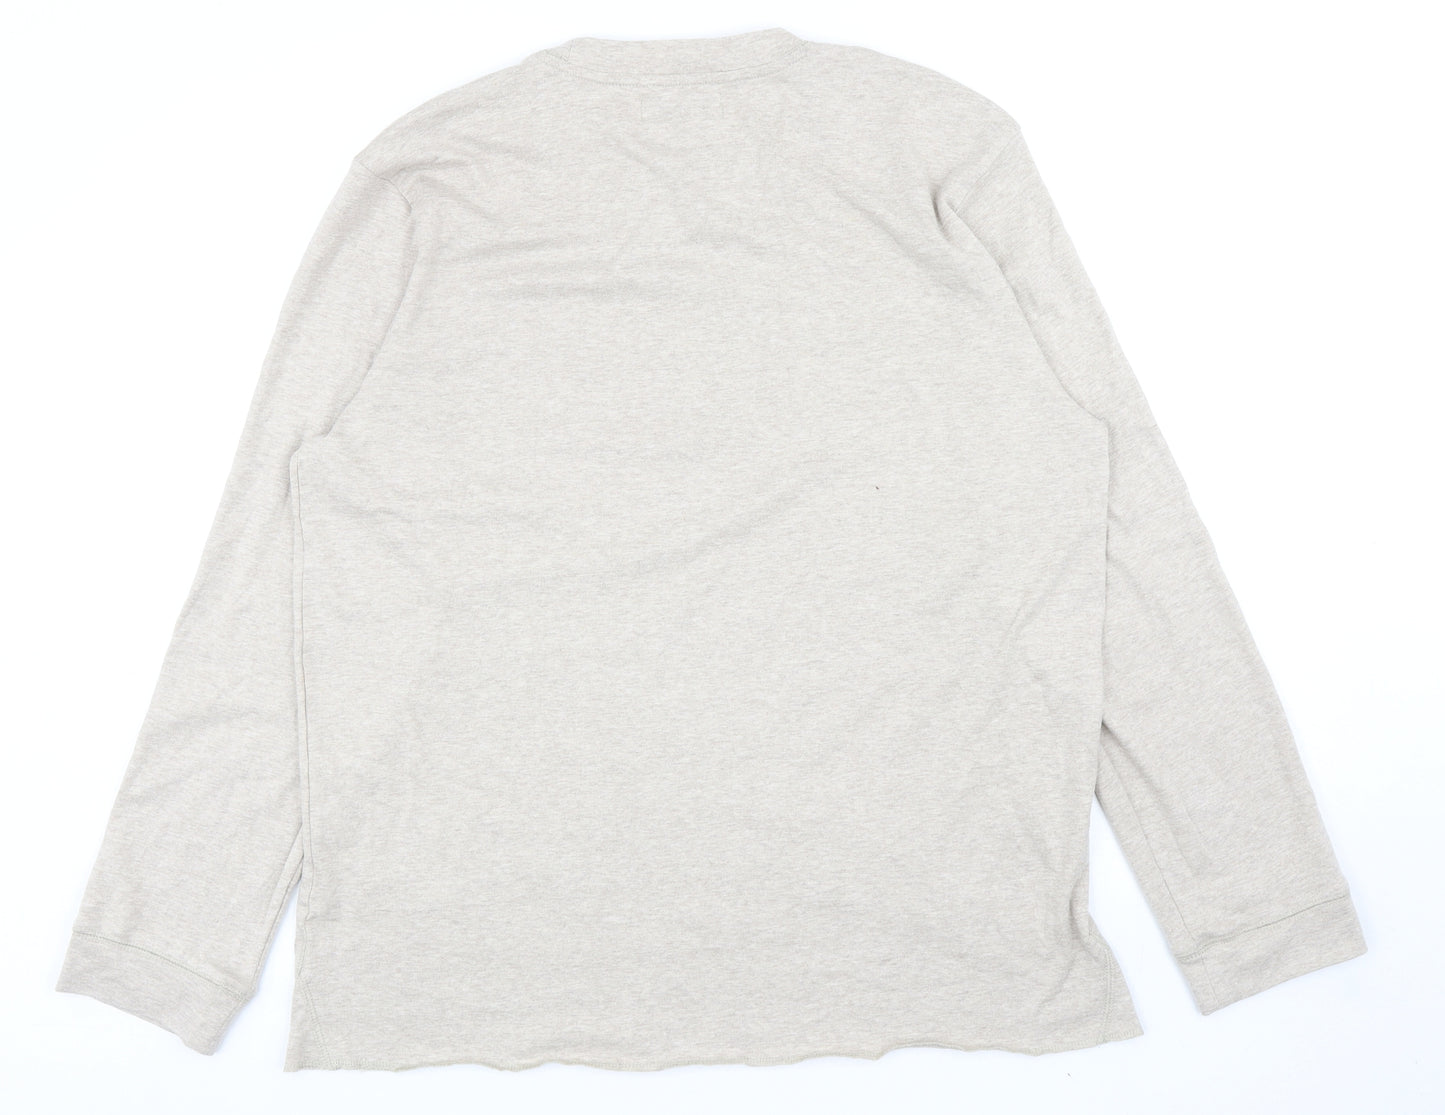 Primark Mens Beige Cotton Pullover Sweatshirt Size XL